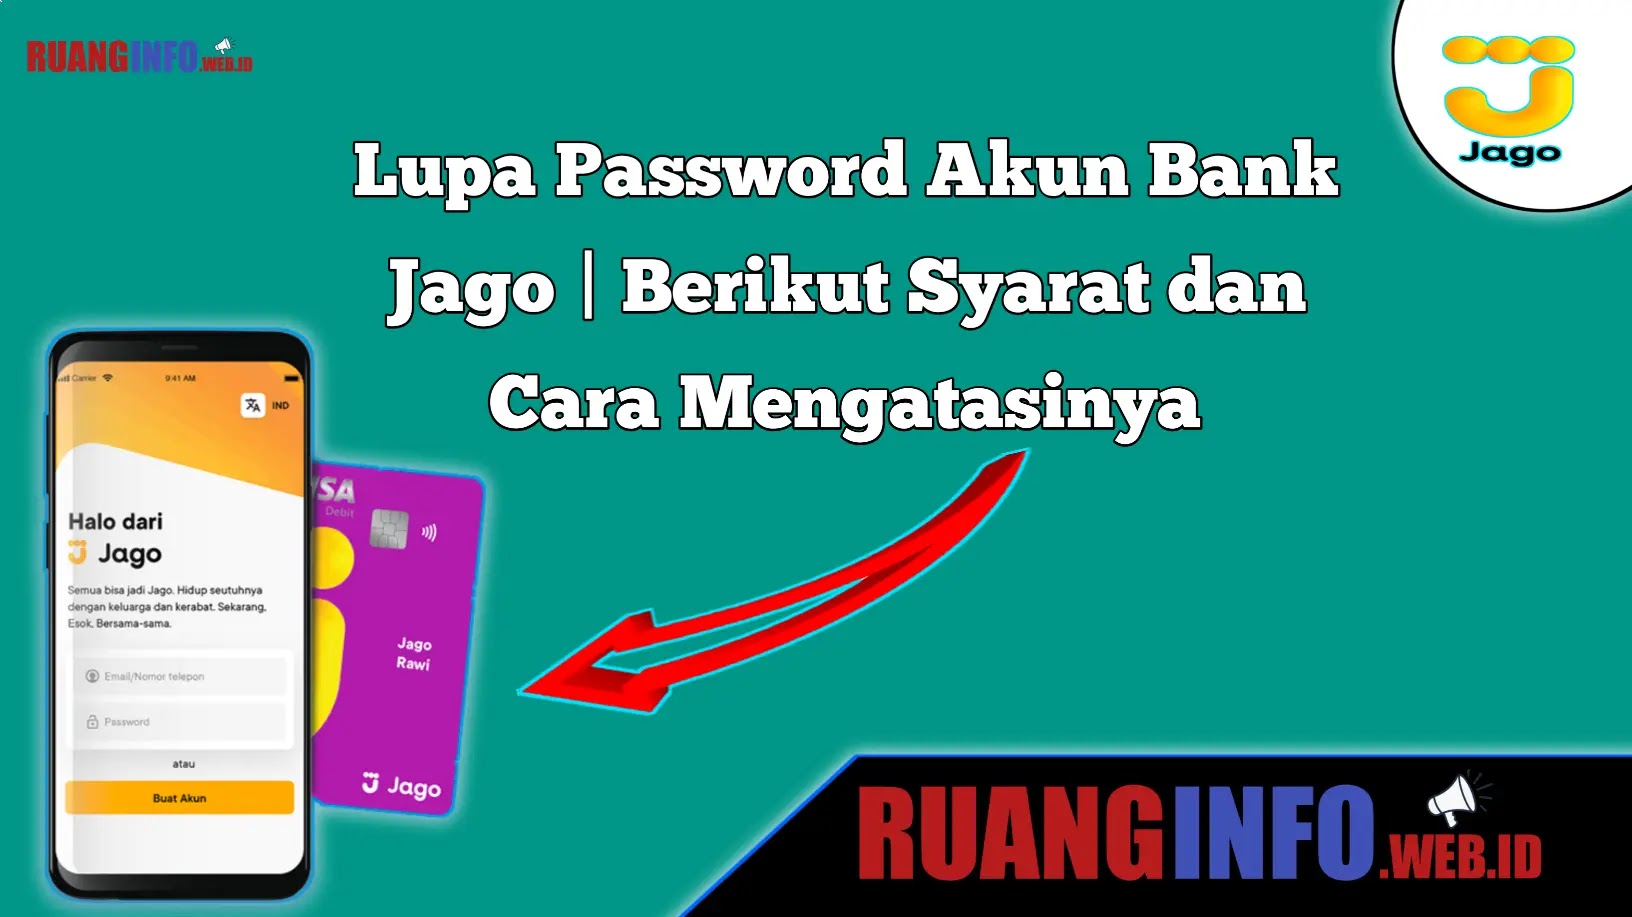 Syarat dan Cara Mengatasi Lupa Password Akun Bank Jago